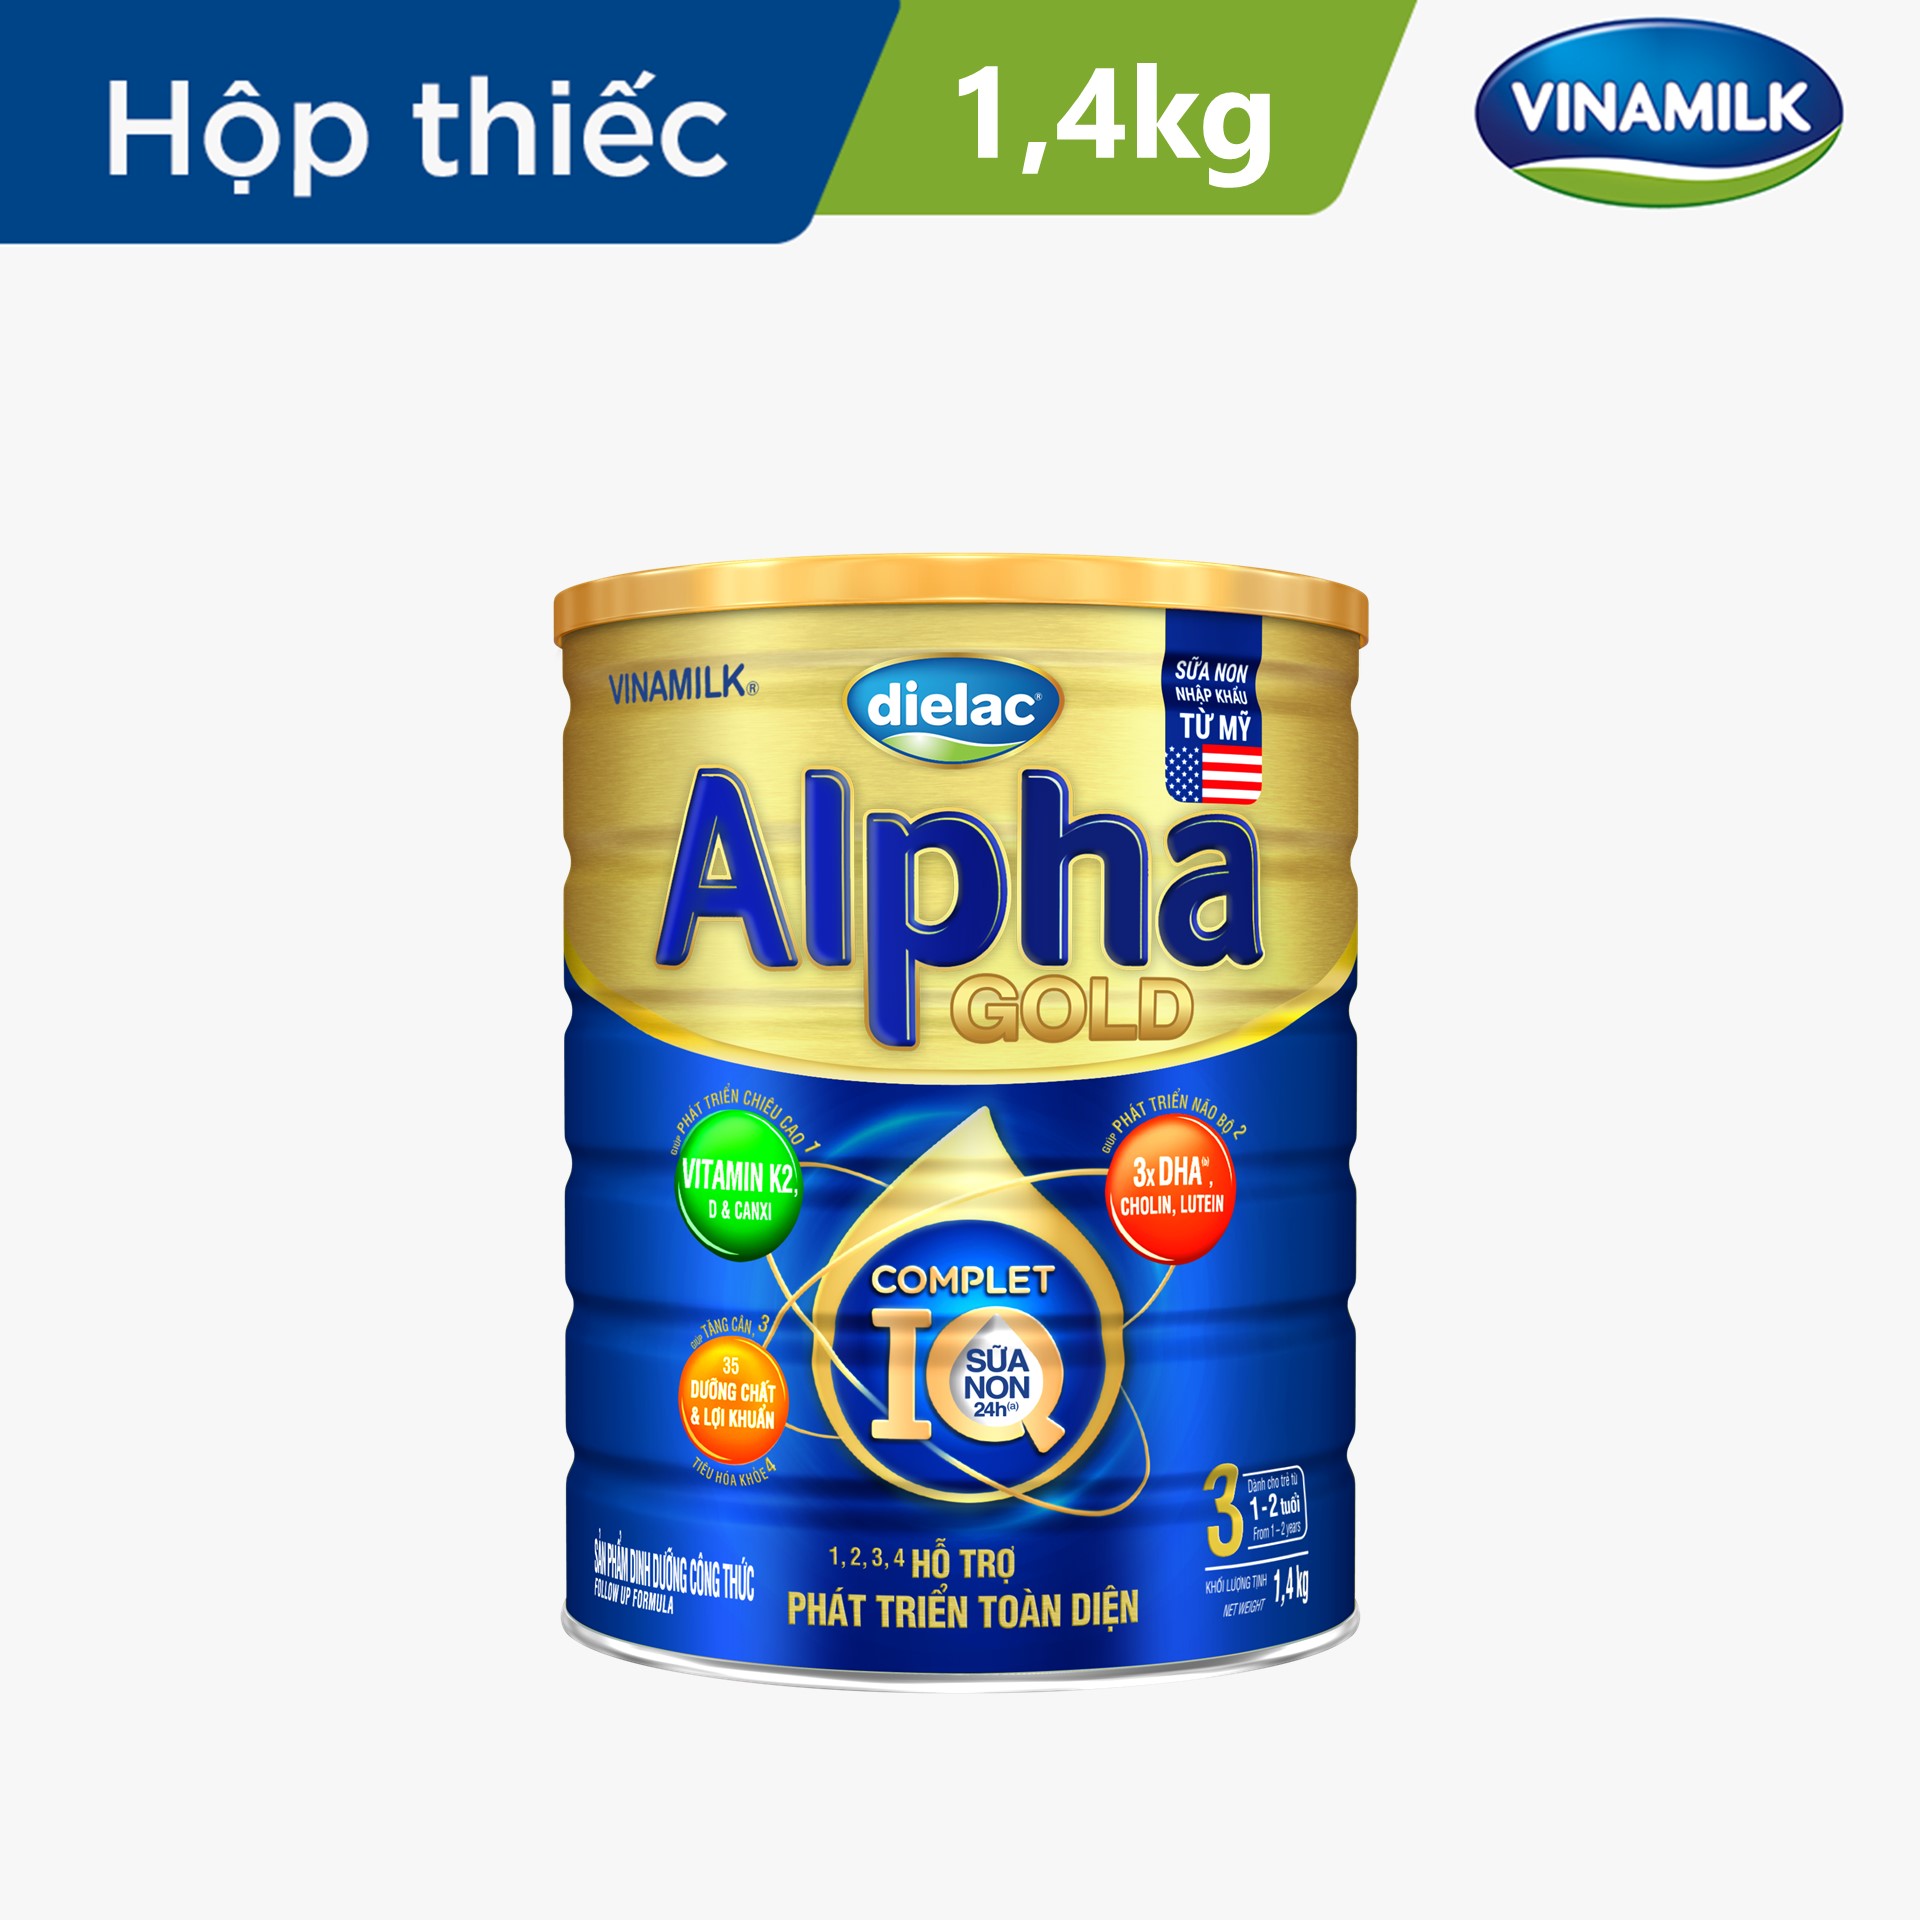 Sữa bột Vinamilk Dielac Alpha Gold 3 - Hộp thiếc 1400g (cho trẻ từ 1 - 2 tuổi) - Sữa công thức hỗ trợ phát triển trí não của trẻ, tăng cân, chiều cao